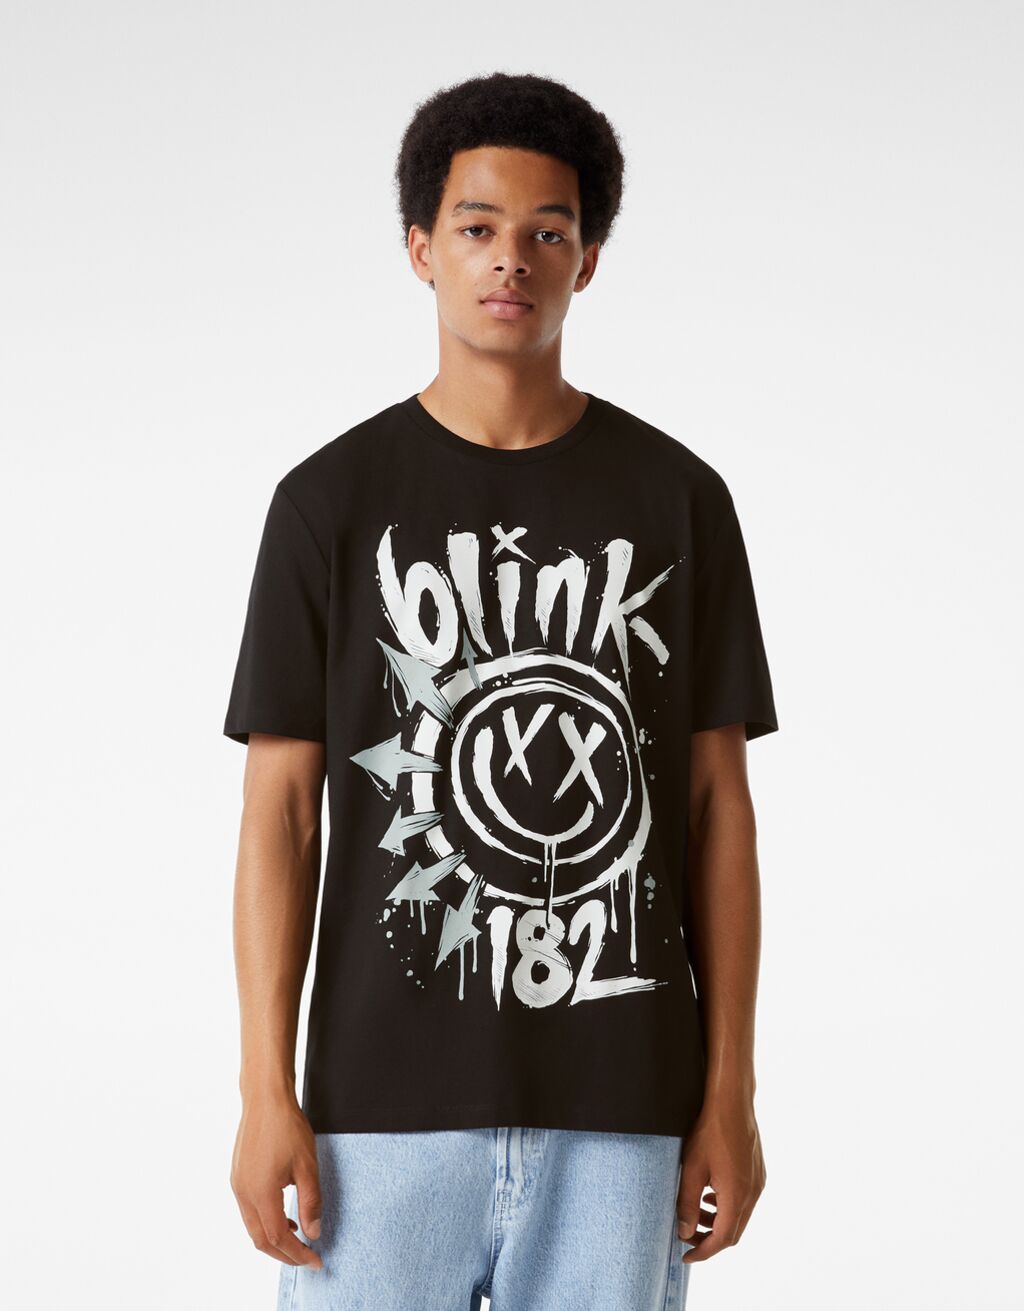 Тениска стандартна кройка с къс ръкав и принт Blink 182